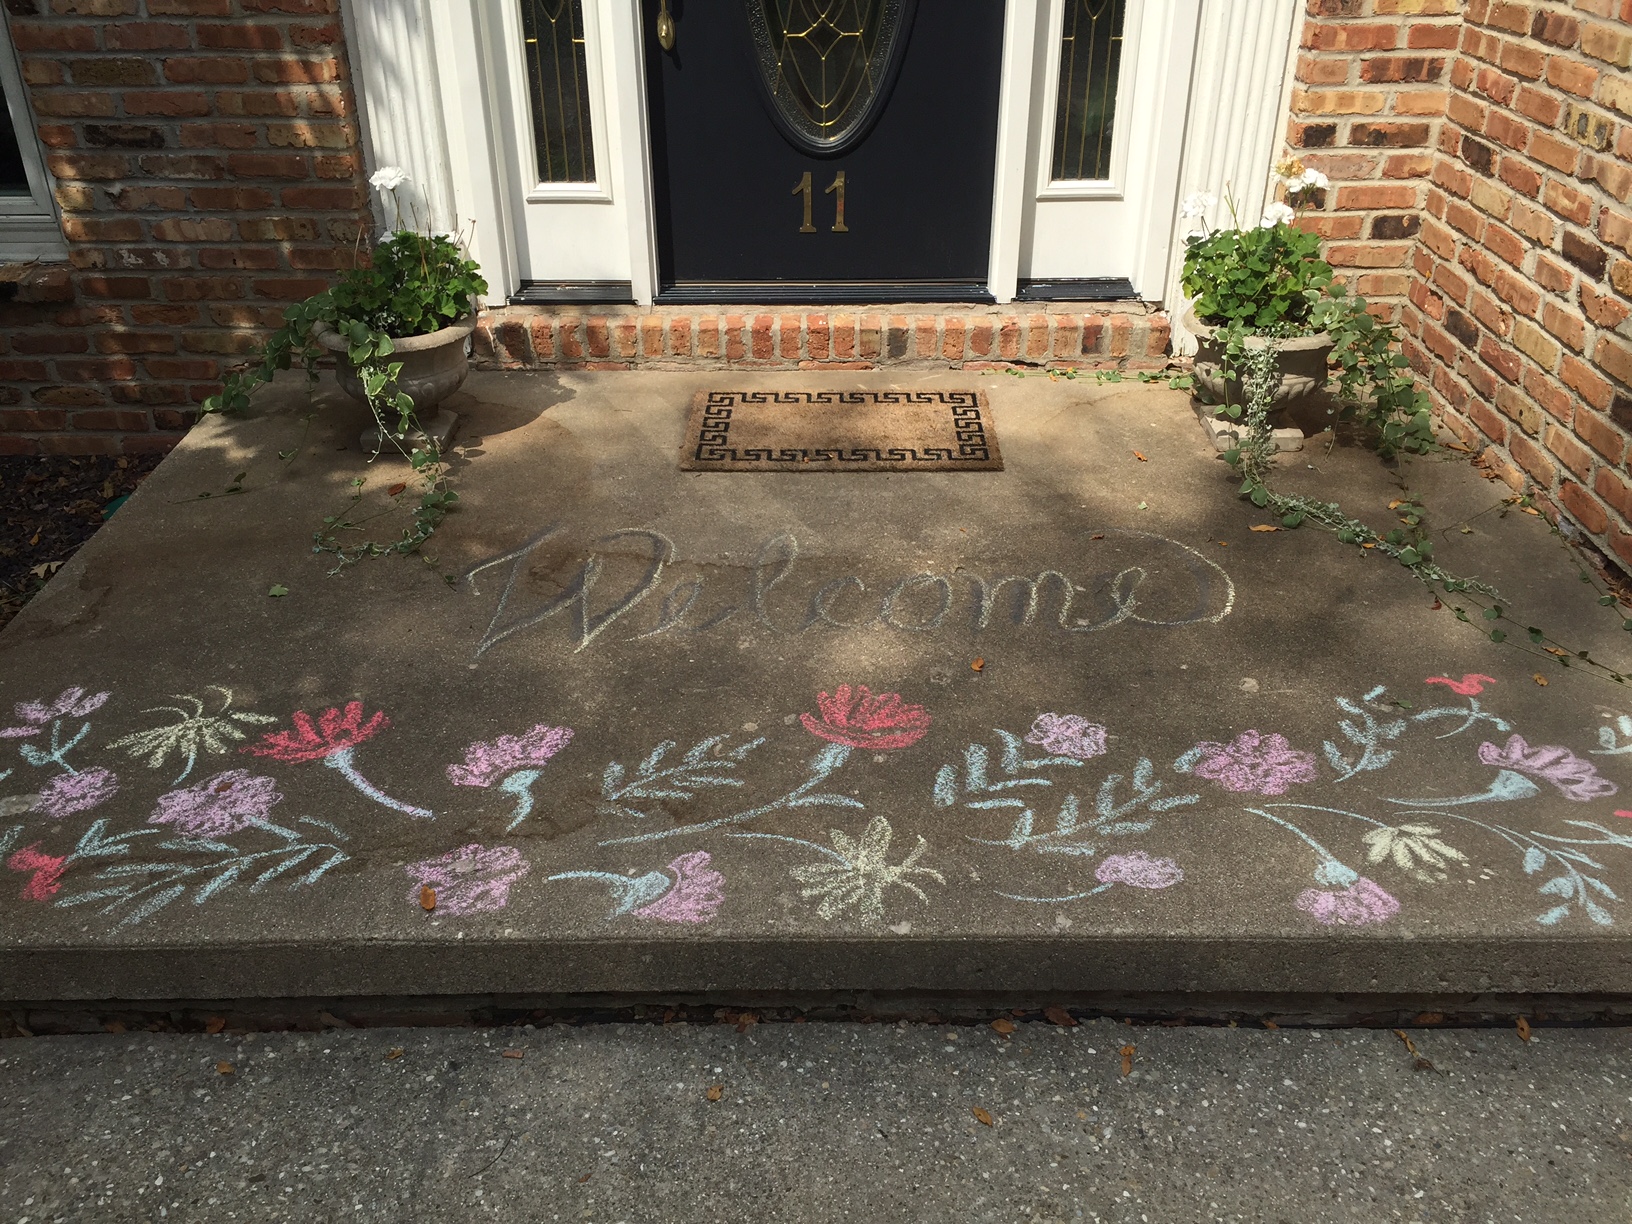 Grown-up sidewalk chalk